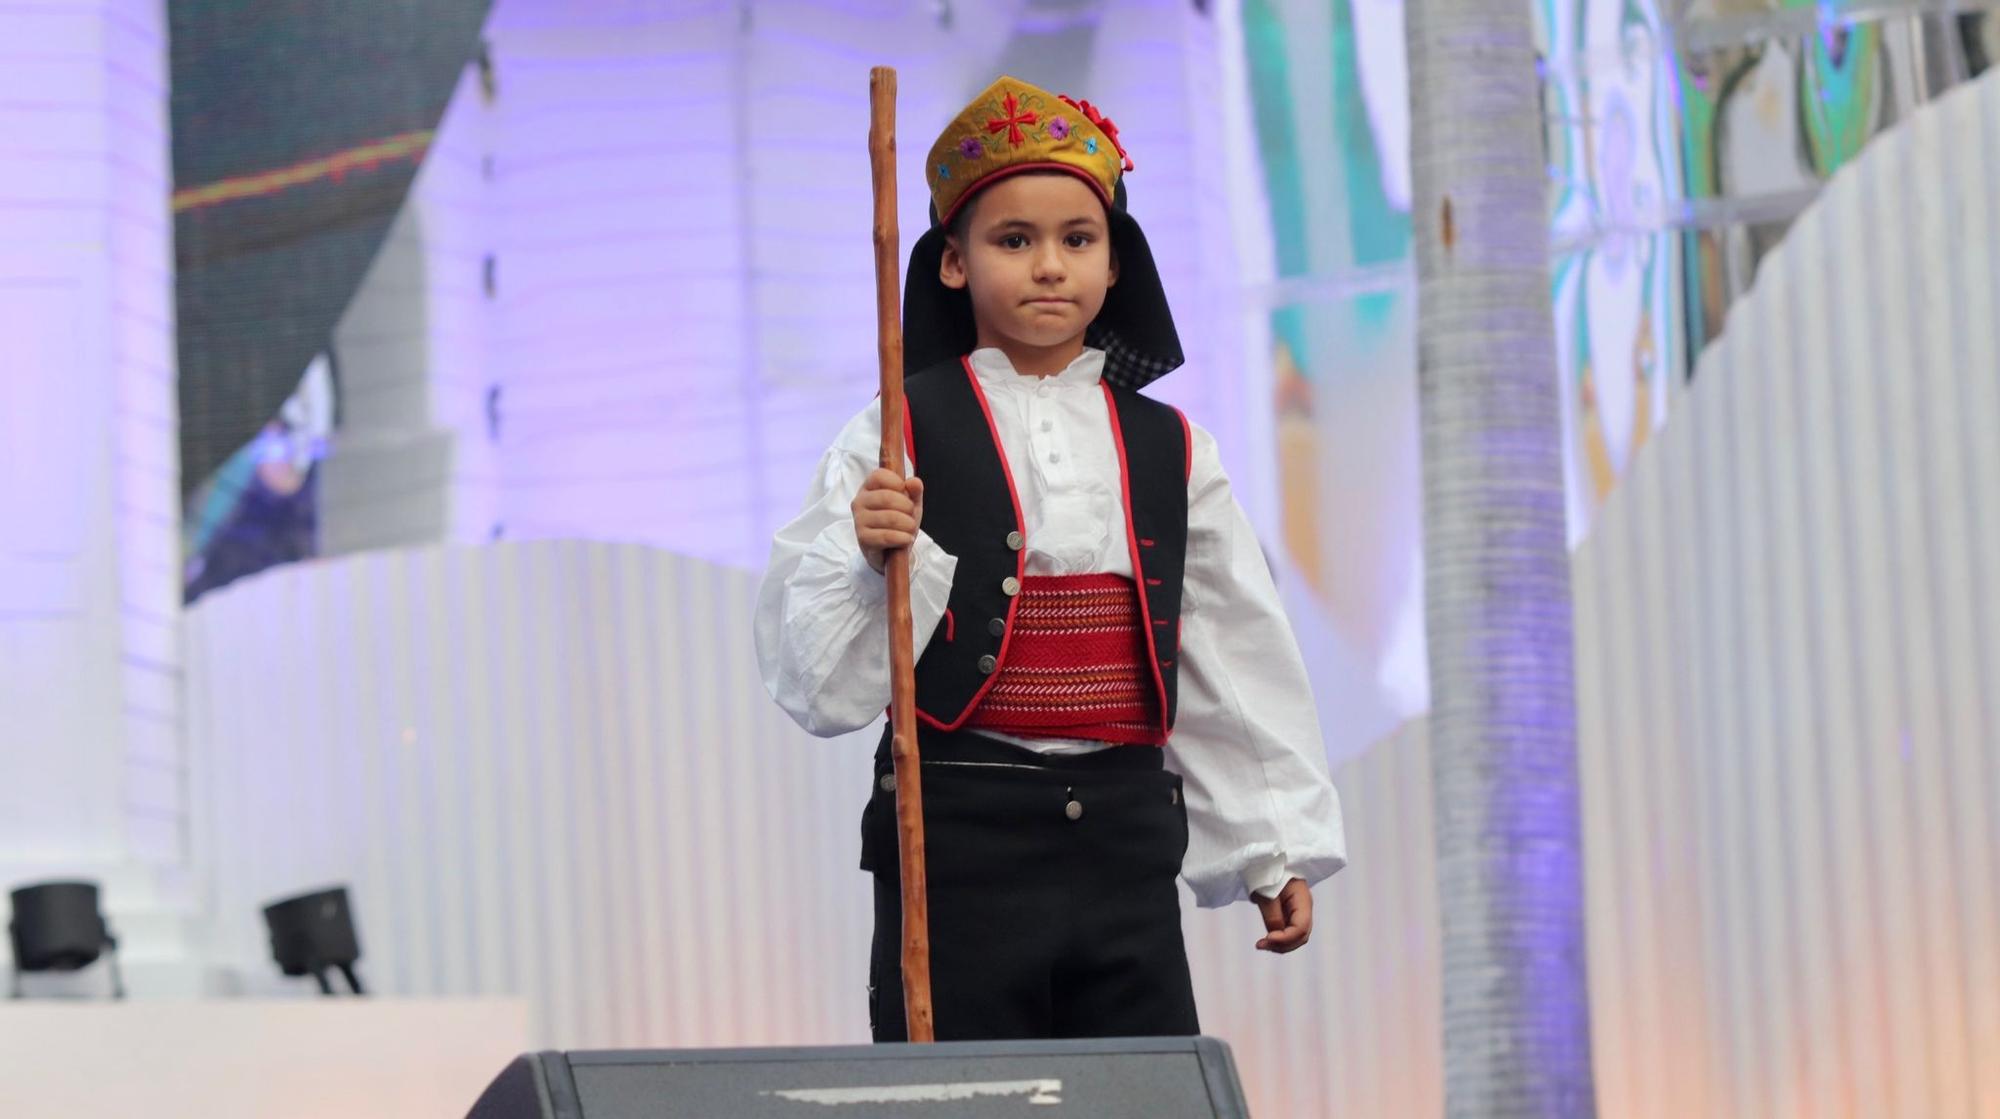 Elección de romeros infantiles Fiestas de Mayo 2023